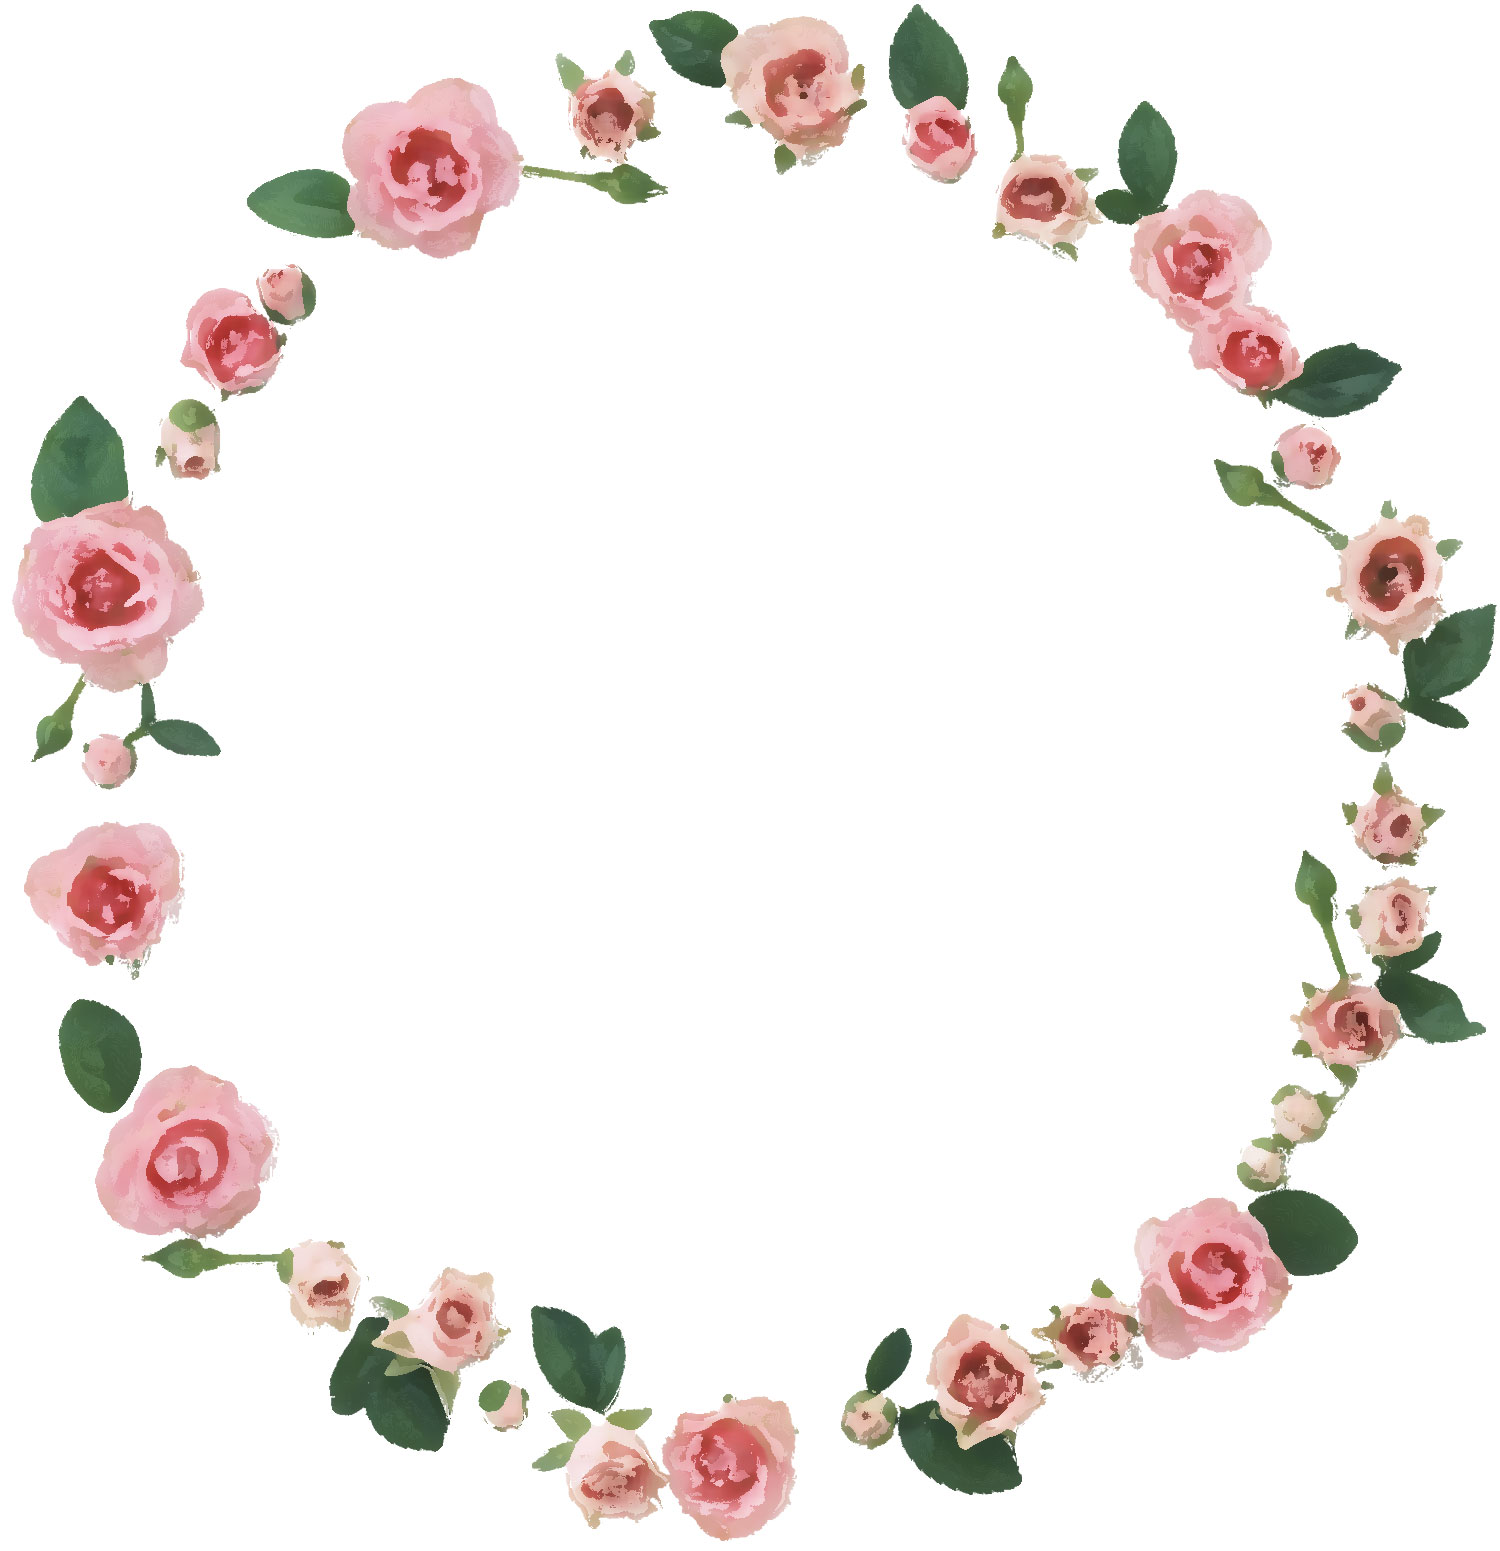 ピンクの花のイラスト フリー素材 No 314 ピンクのバラ 葉 輪